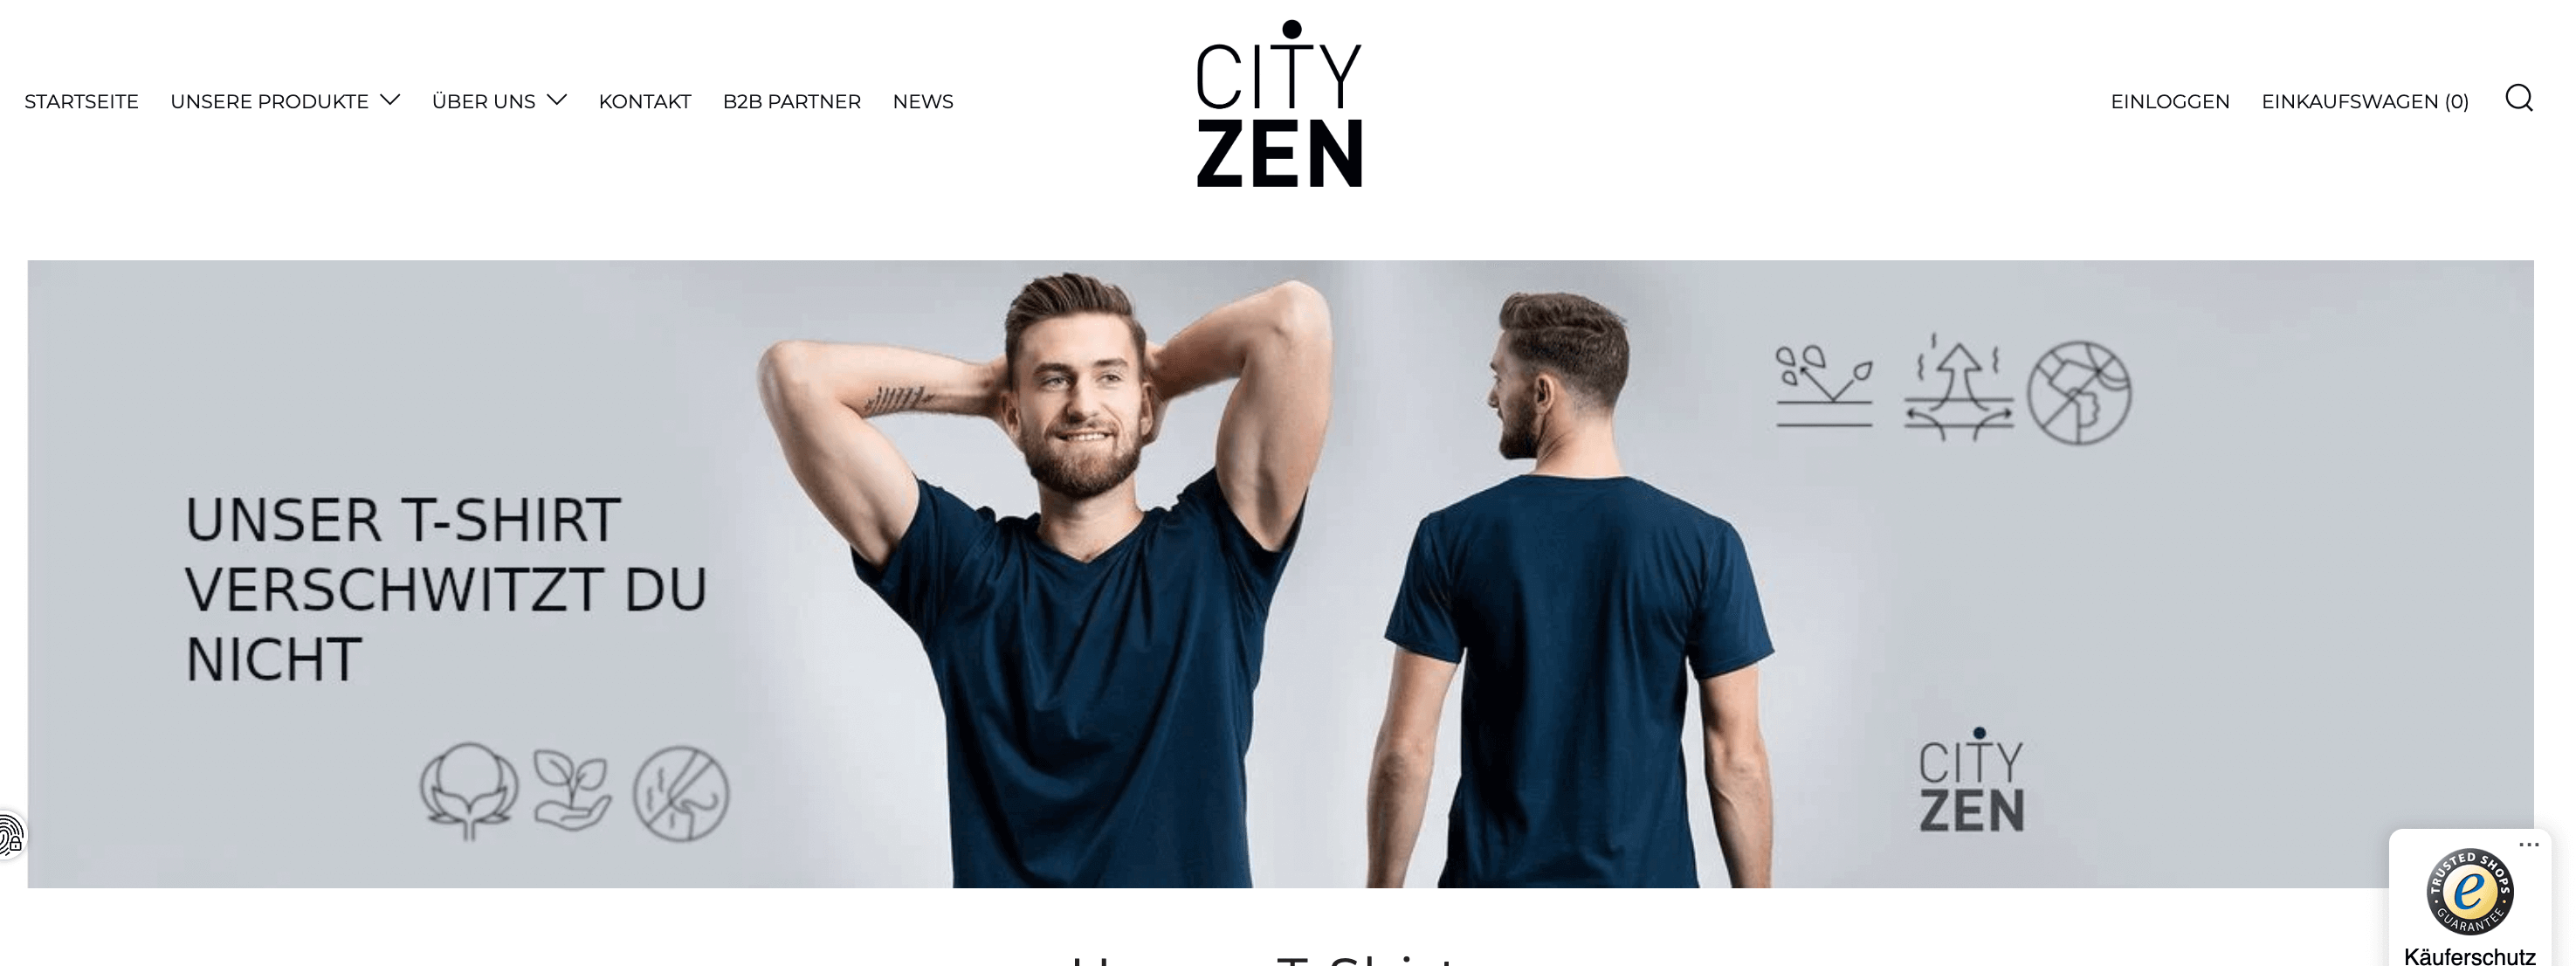 marketingová strategie od PPC specialista - I am free pro cityzenwear.de